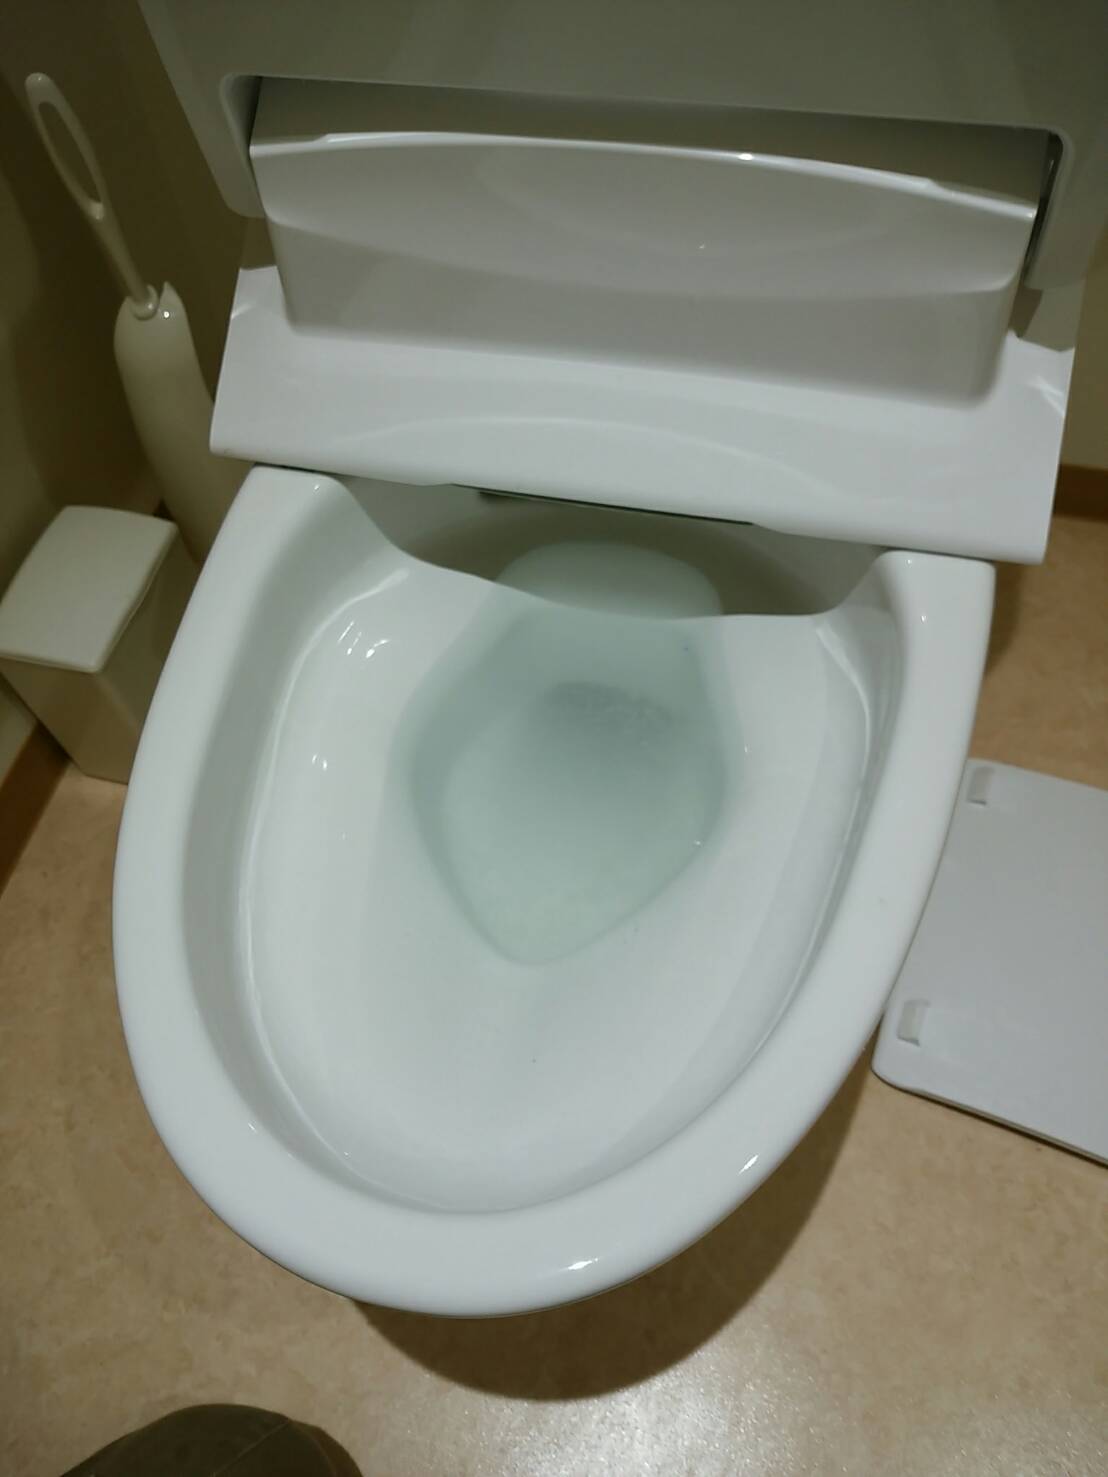 姫路市のお客様からトイレつまり修理のご依頼を頂きました。